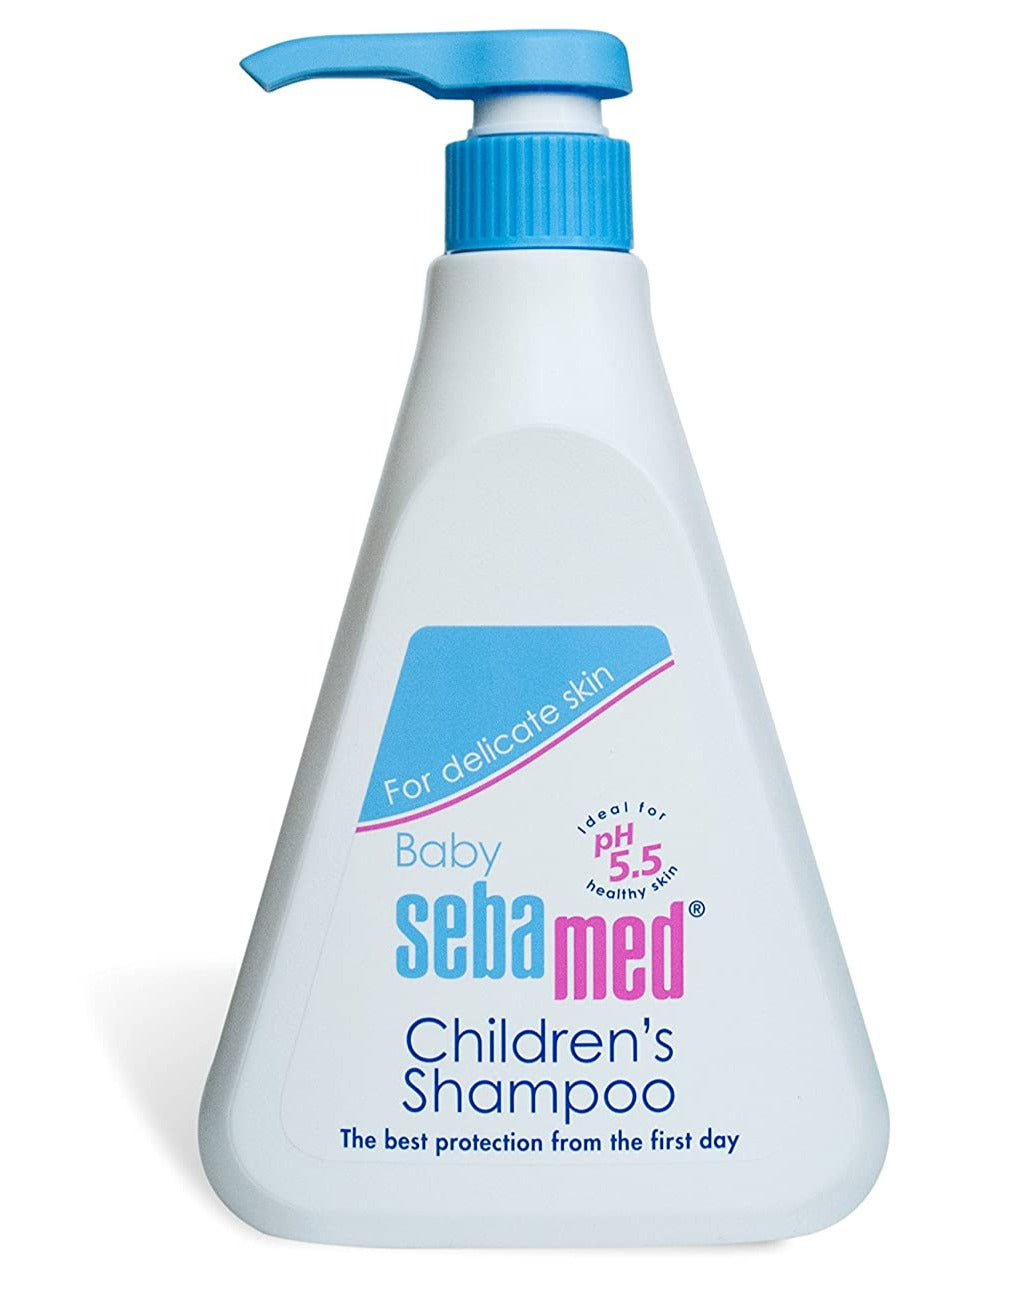 Sebamed Baby Children's Shampoo, 500ml